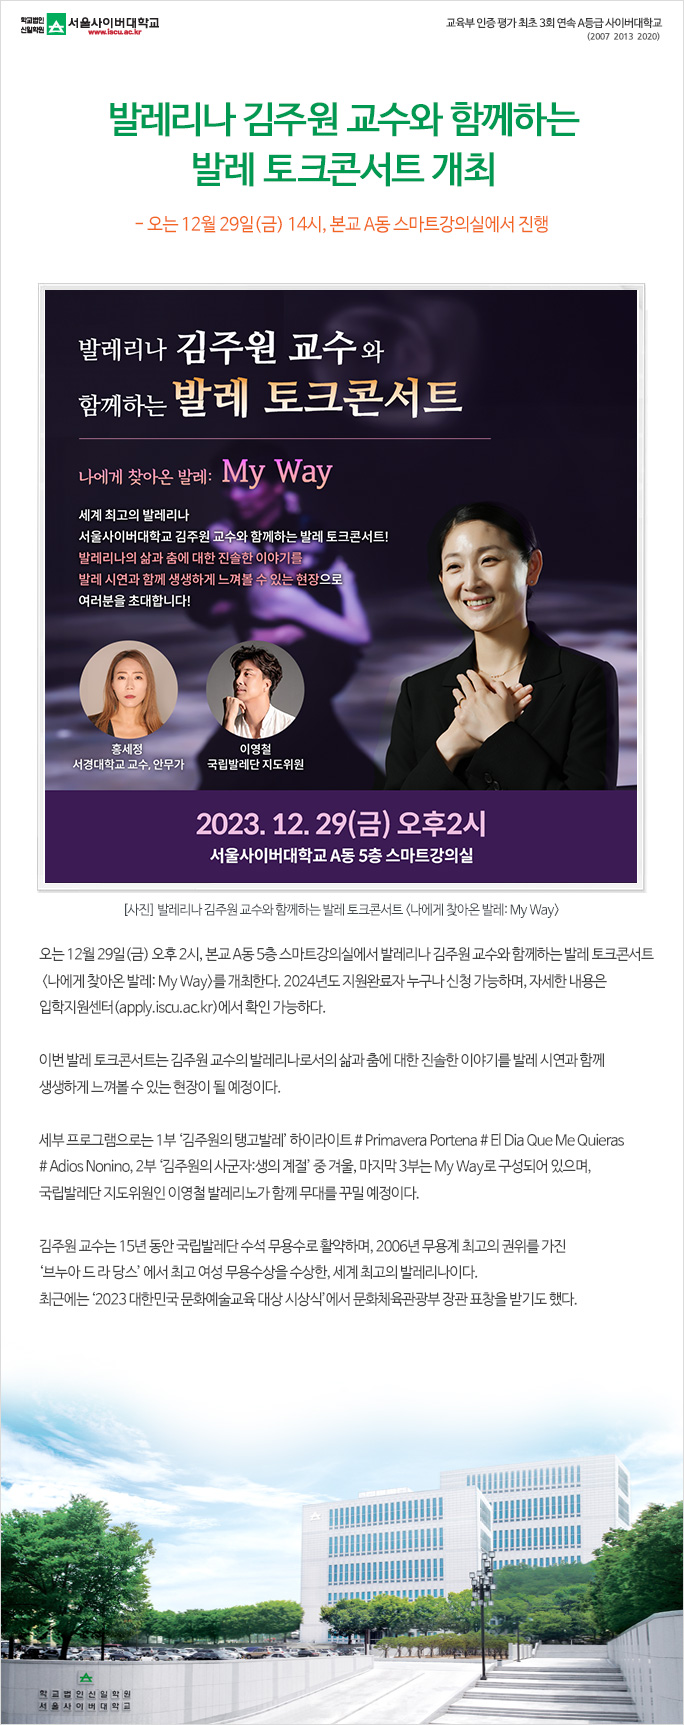 발레리나 김주원 교수와 함께하는 발레 토크콘서트 개최. 상세내용 하단참고